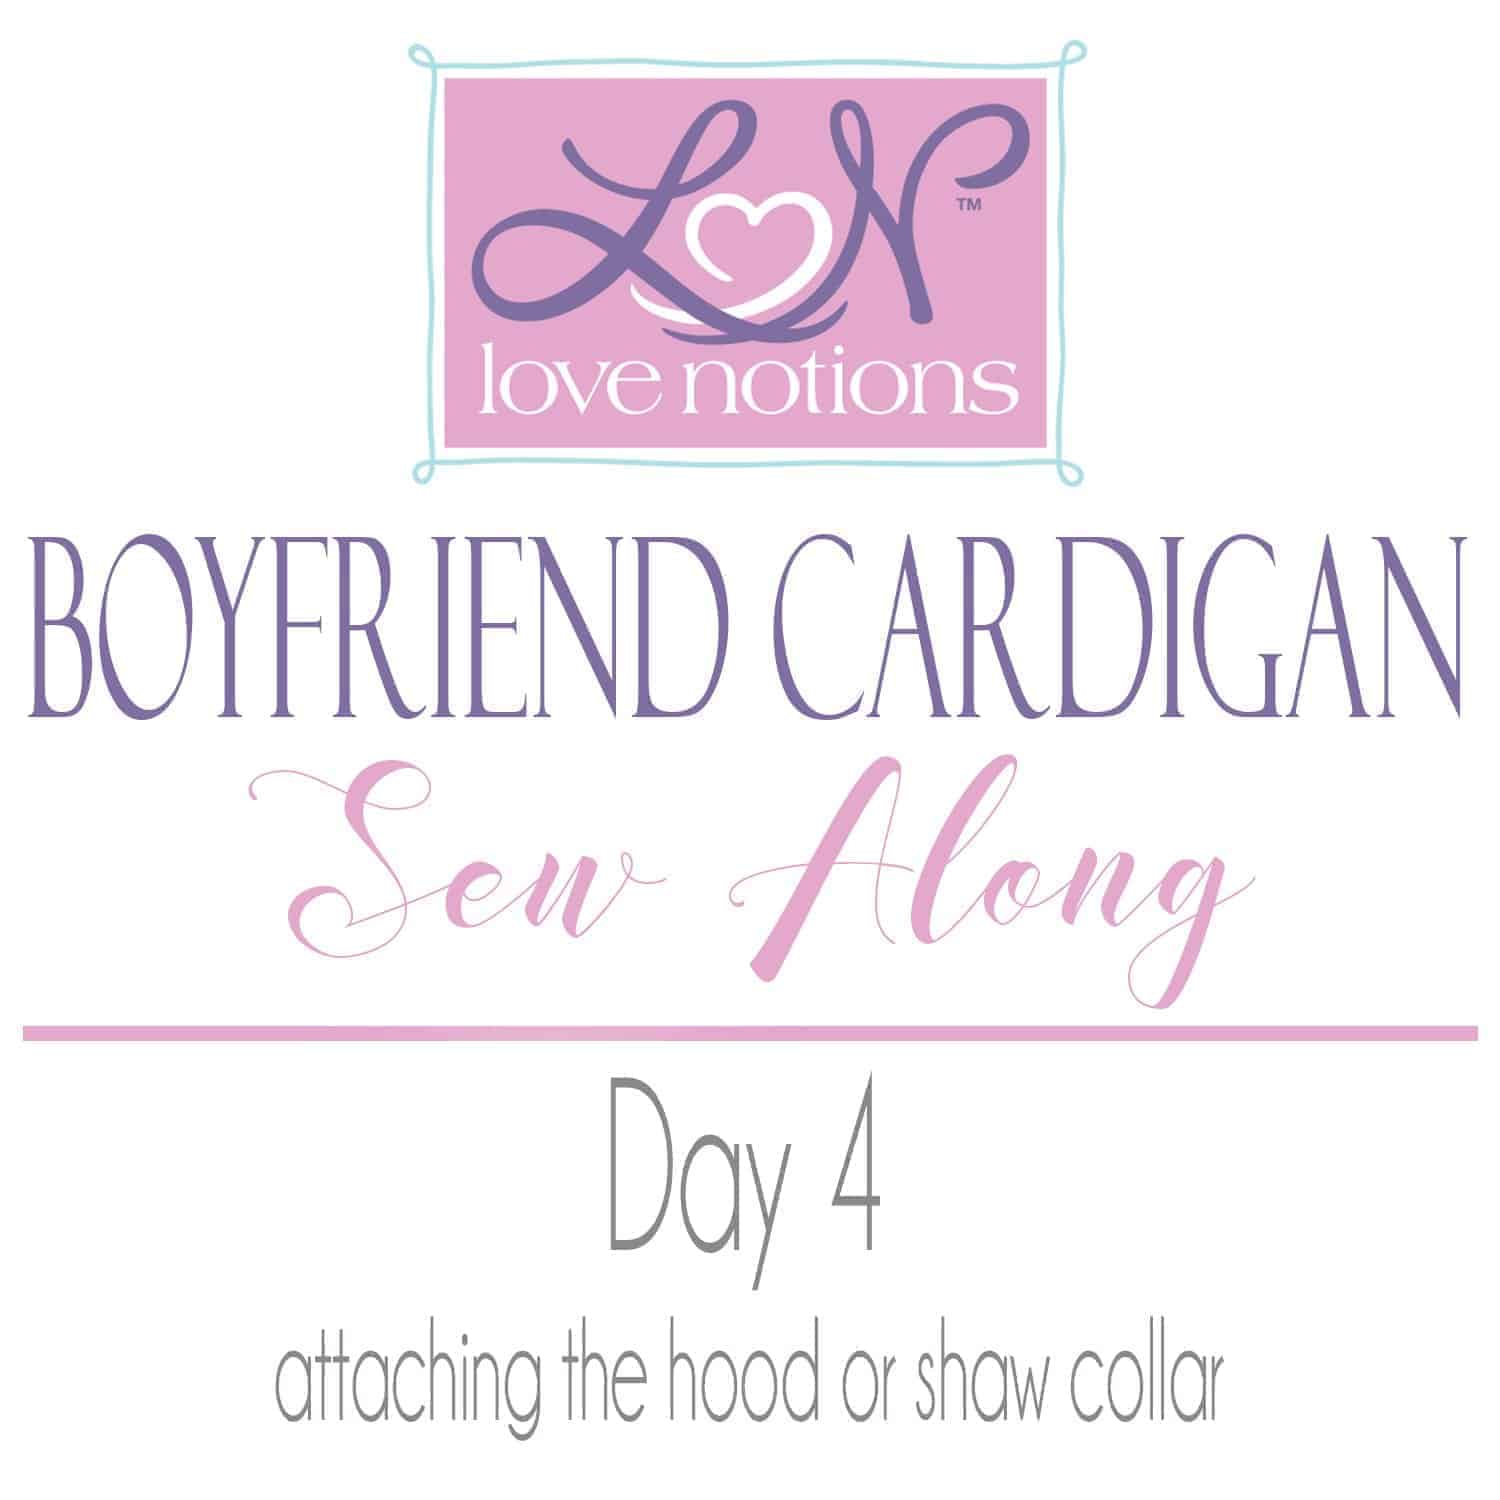 Boyfriend Cardigan Sew Along Day 4